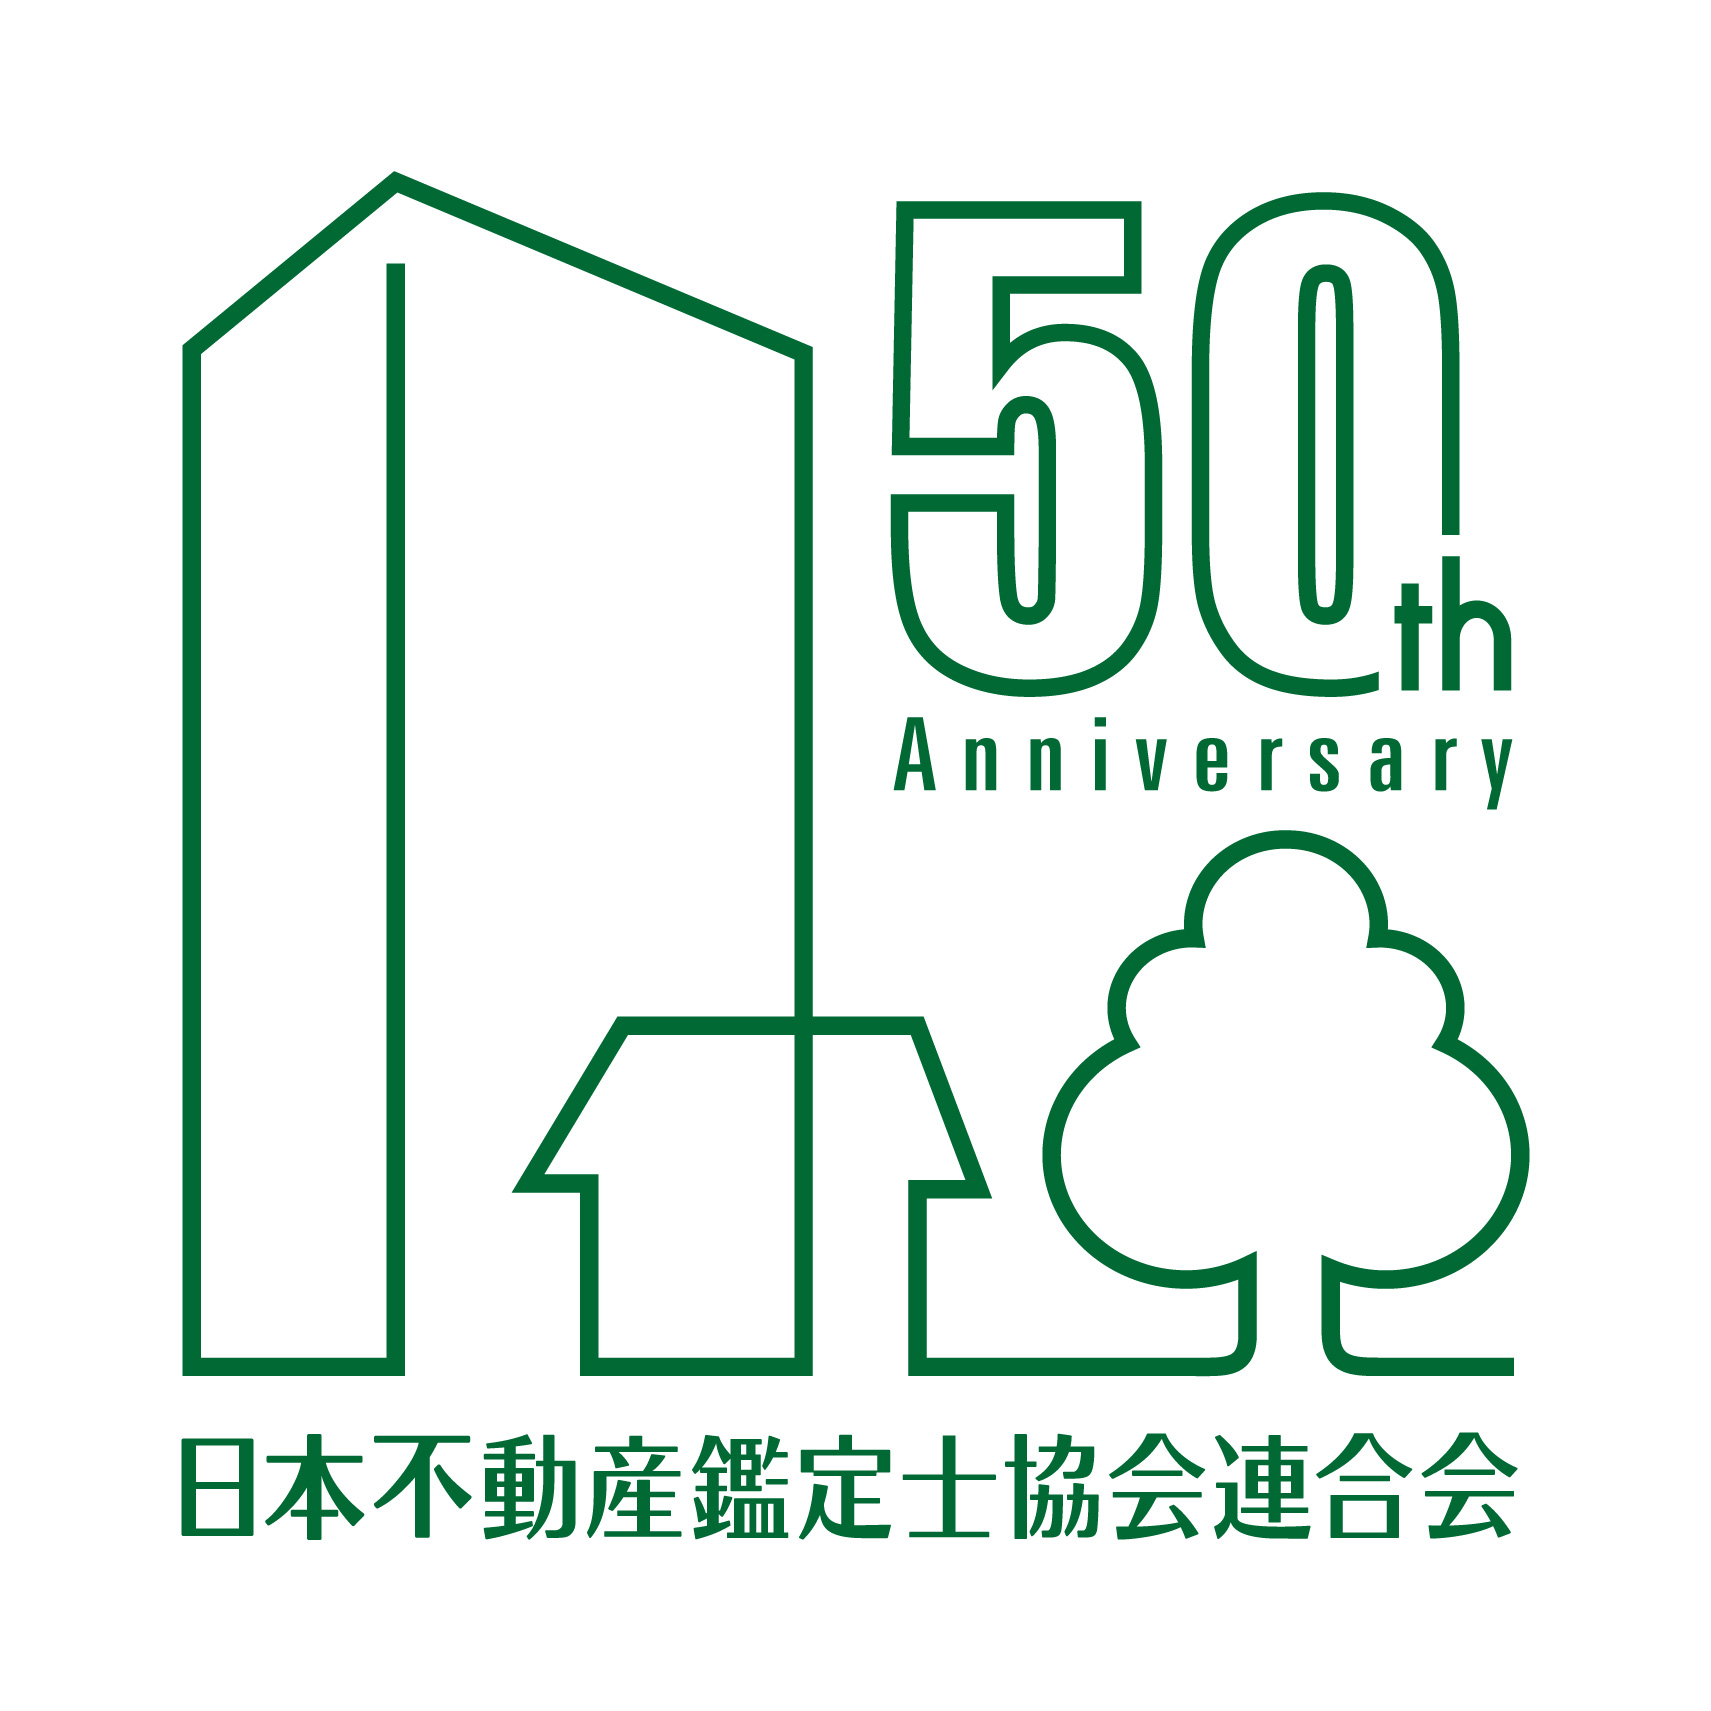 「日本不動産鑑定士協会連合会50周年ロゴ」決定。_d0061857_1629104.jpg